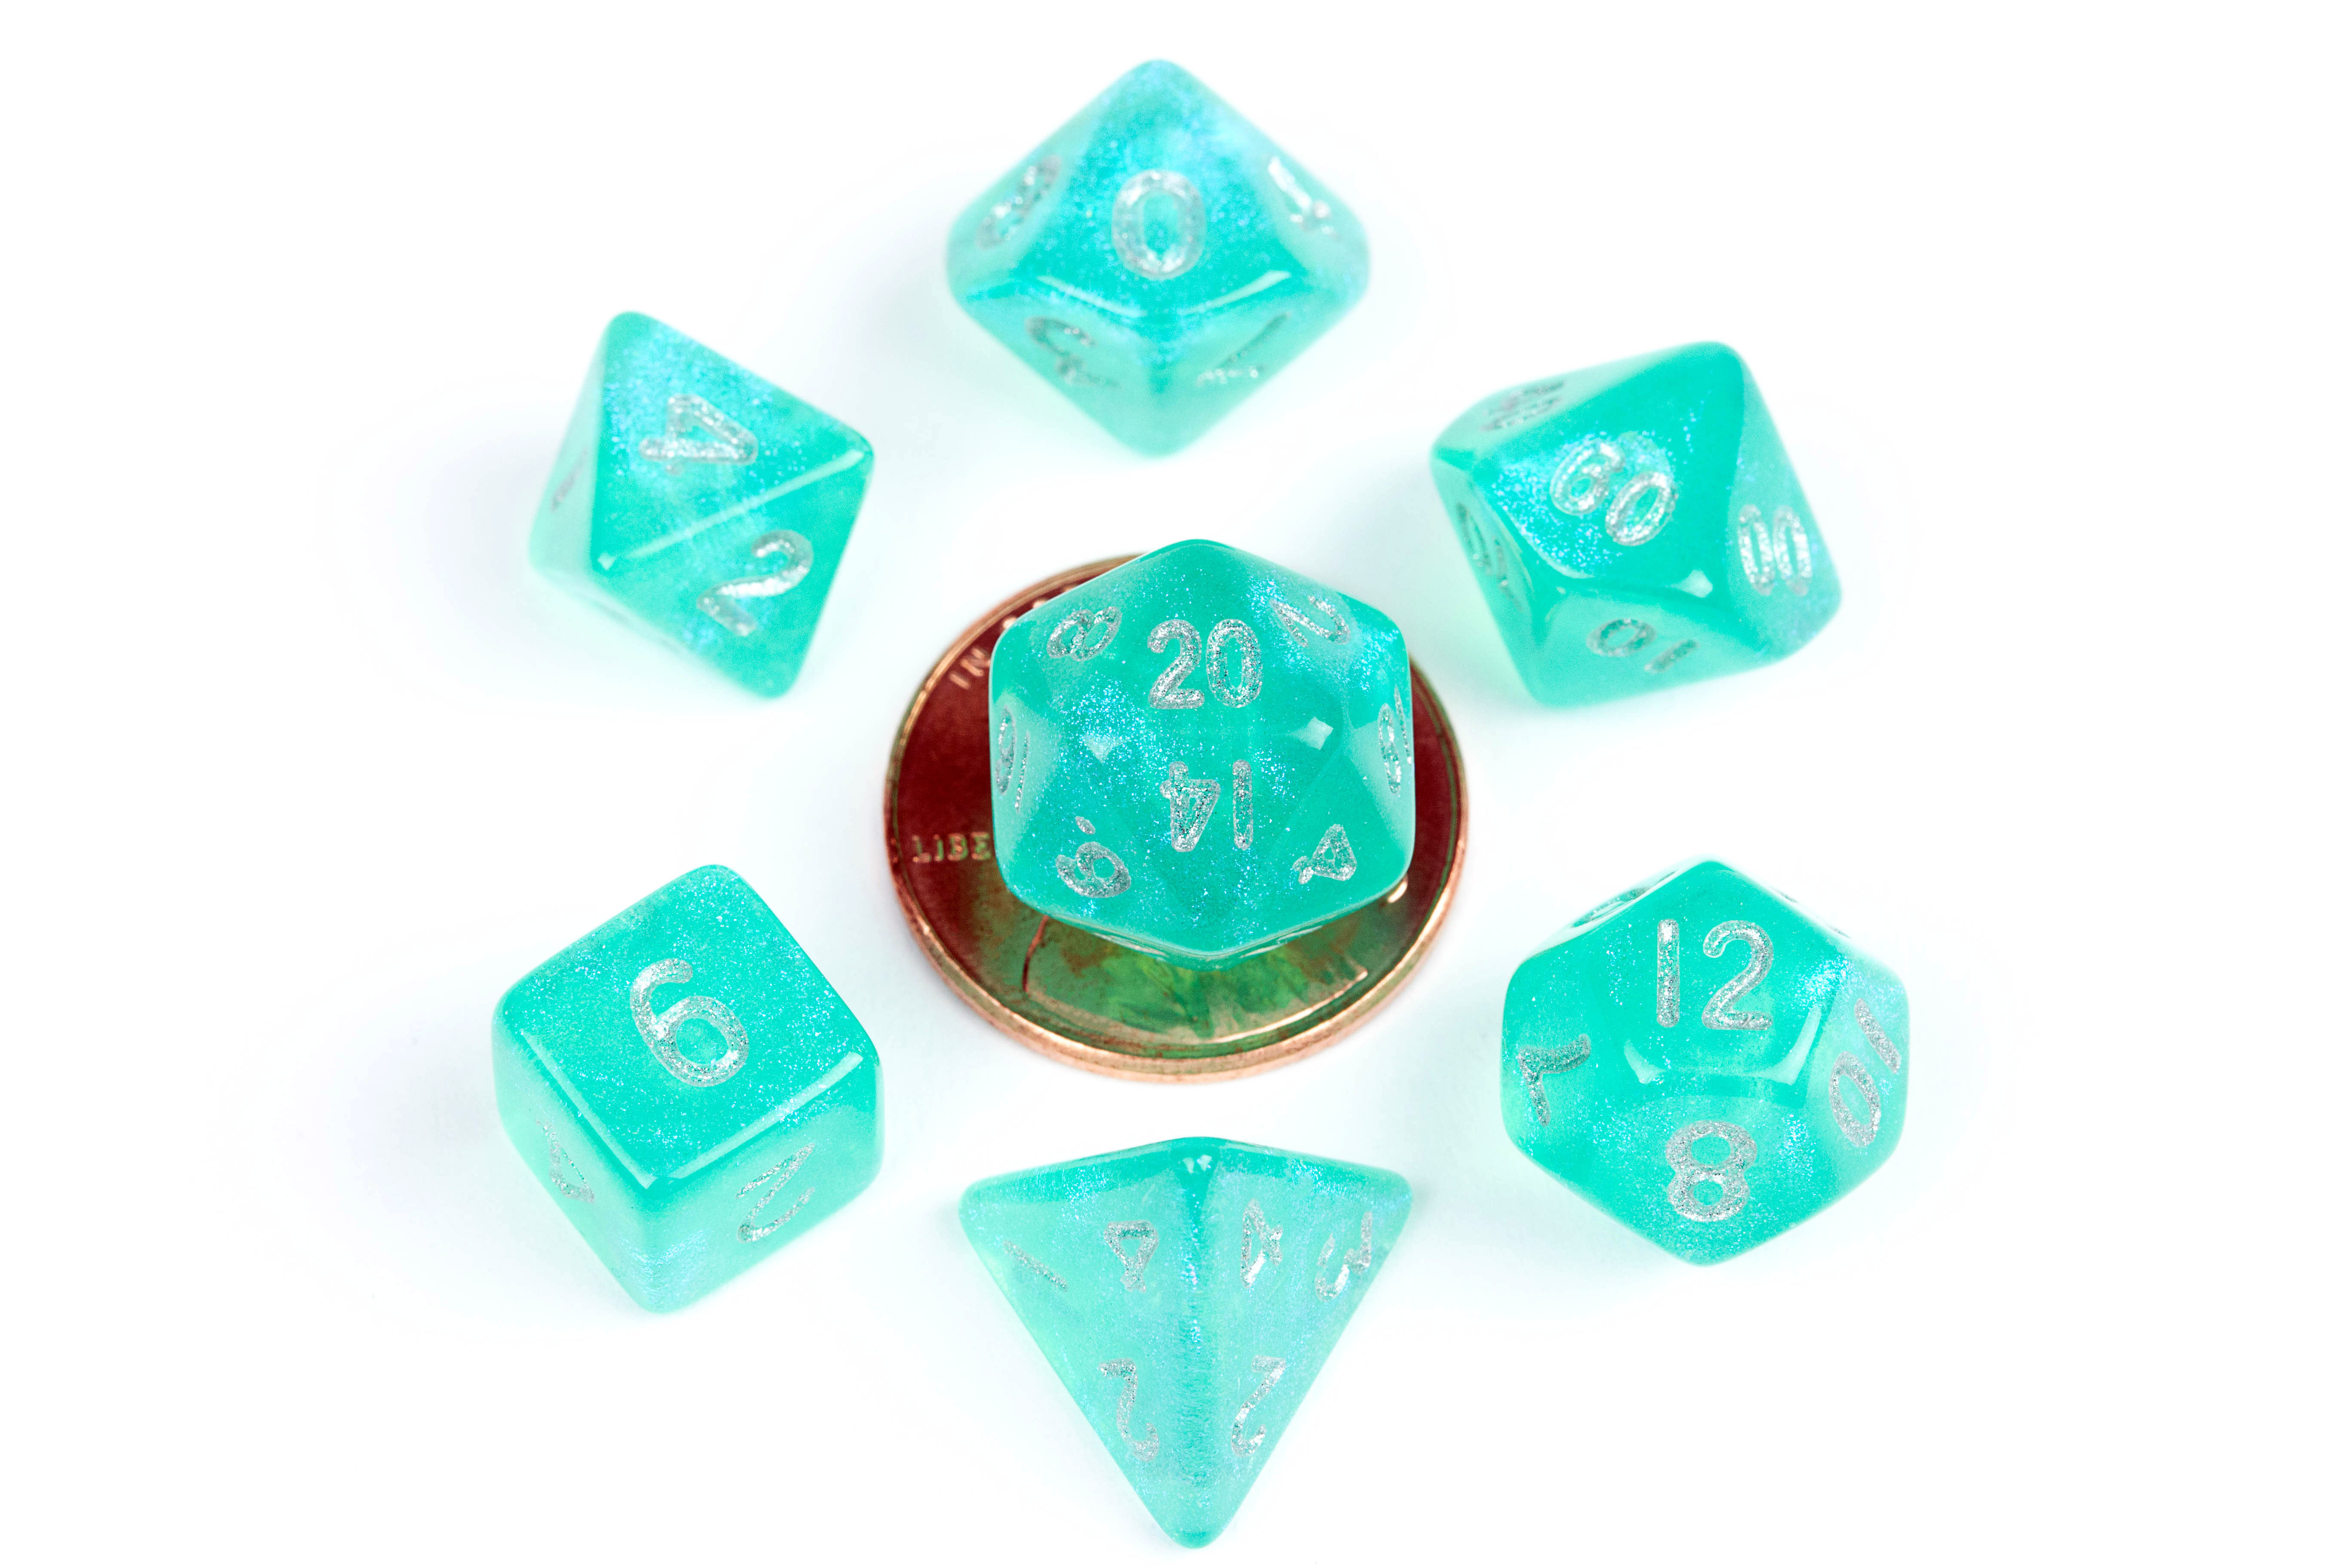 Fanroll: Mini 7 Dice Polyhedral Set: Stardust Turquoise (10mm) 